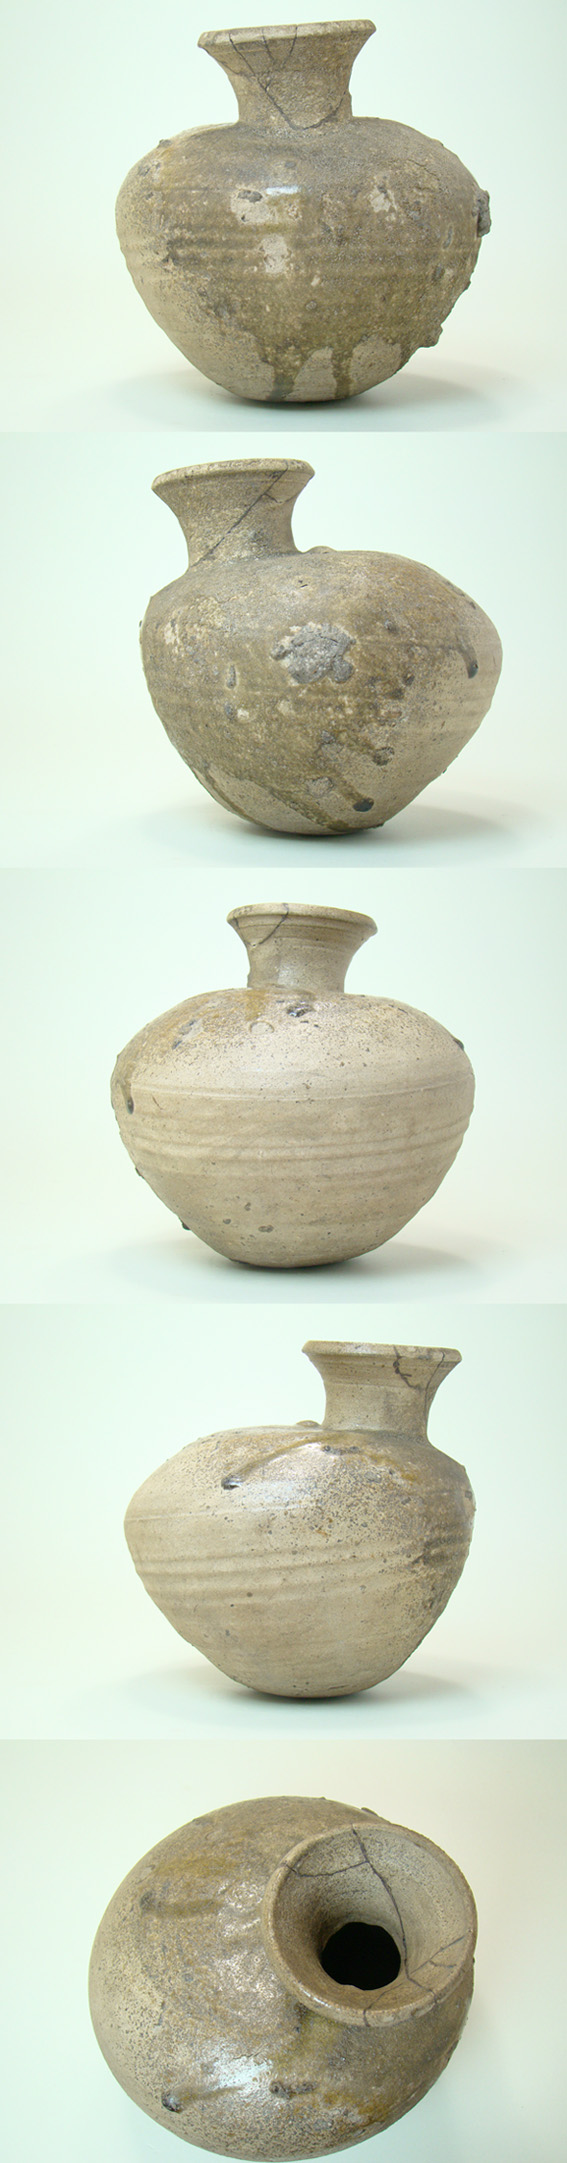 古陶器 須恵器 平瓶 V R6308F 正規 - www.woodpreneurlife.com